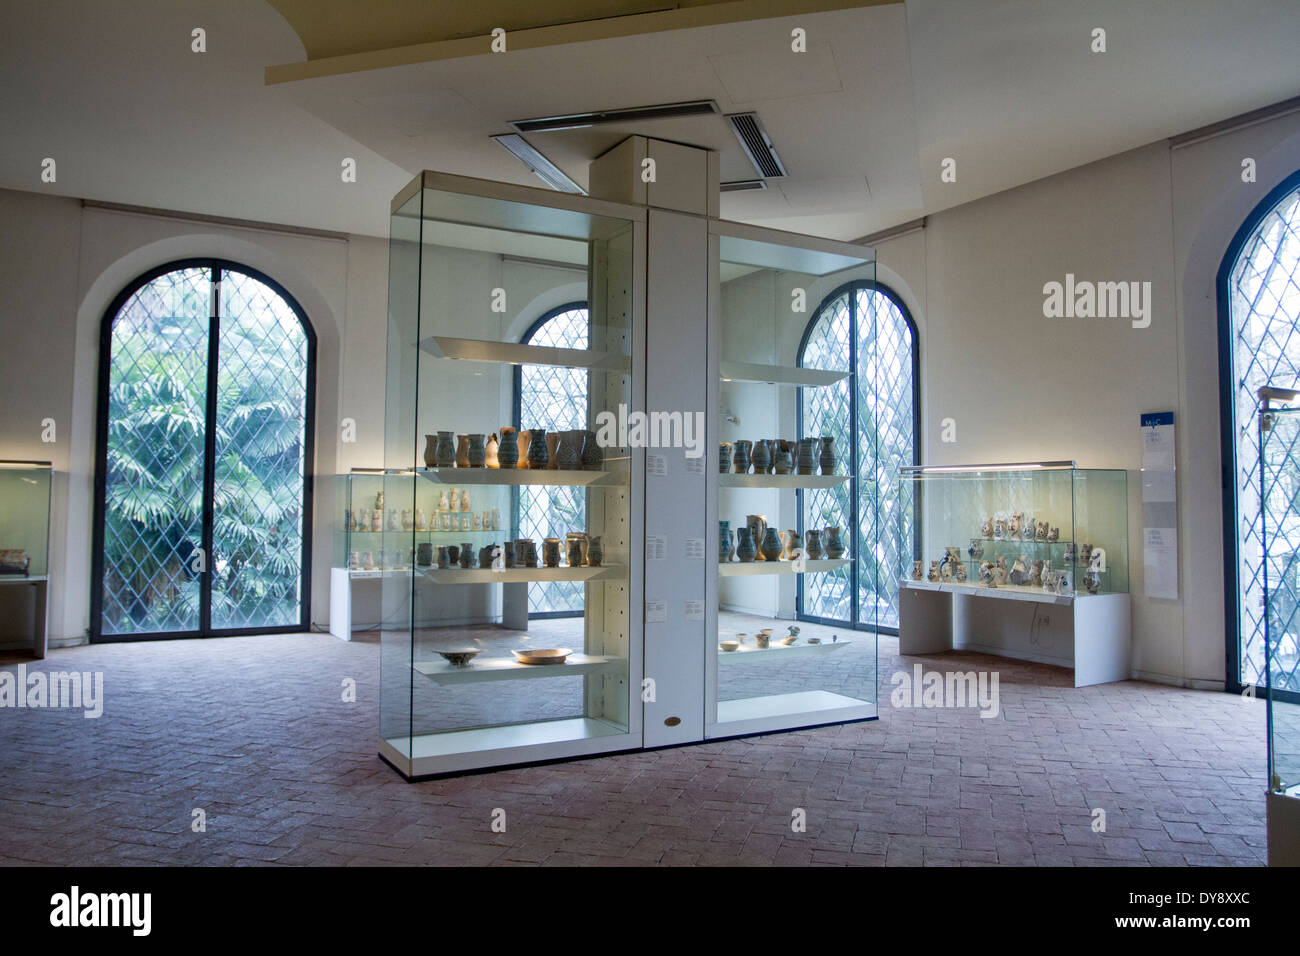 The International Museum of Ceramics, Faenza, Emilia Romagna, Italy Stock Photo